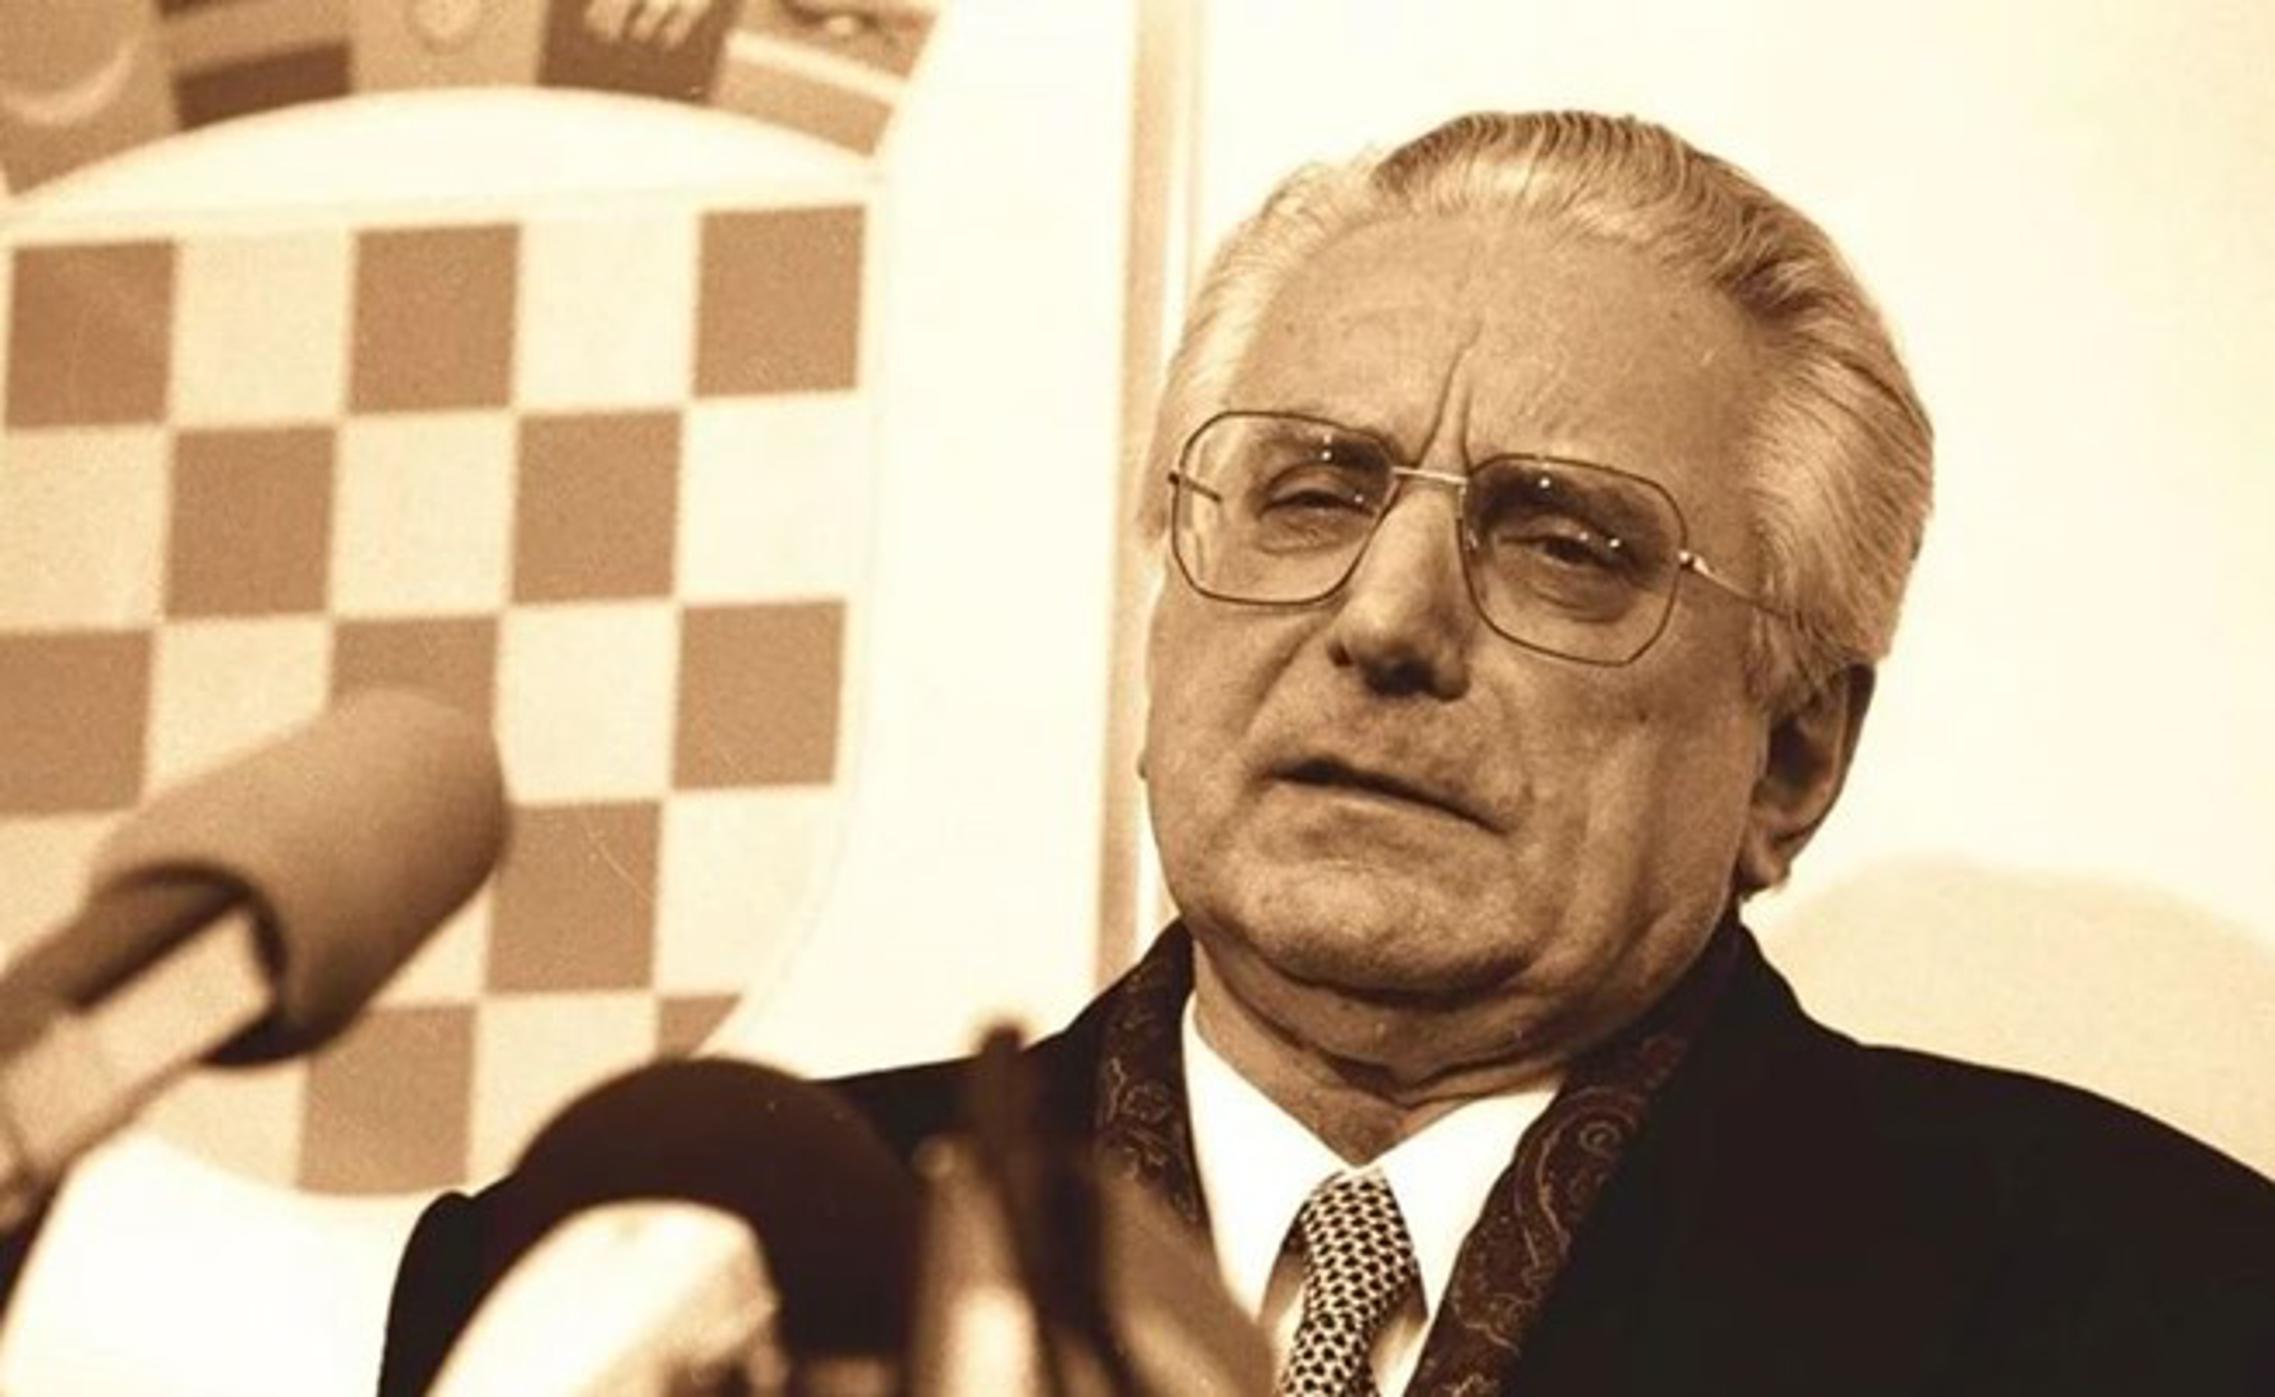 Franjo Tuđman